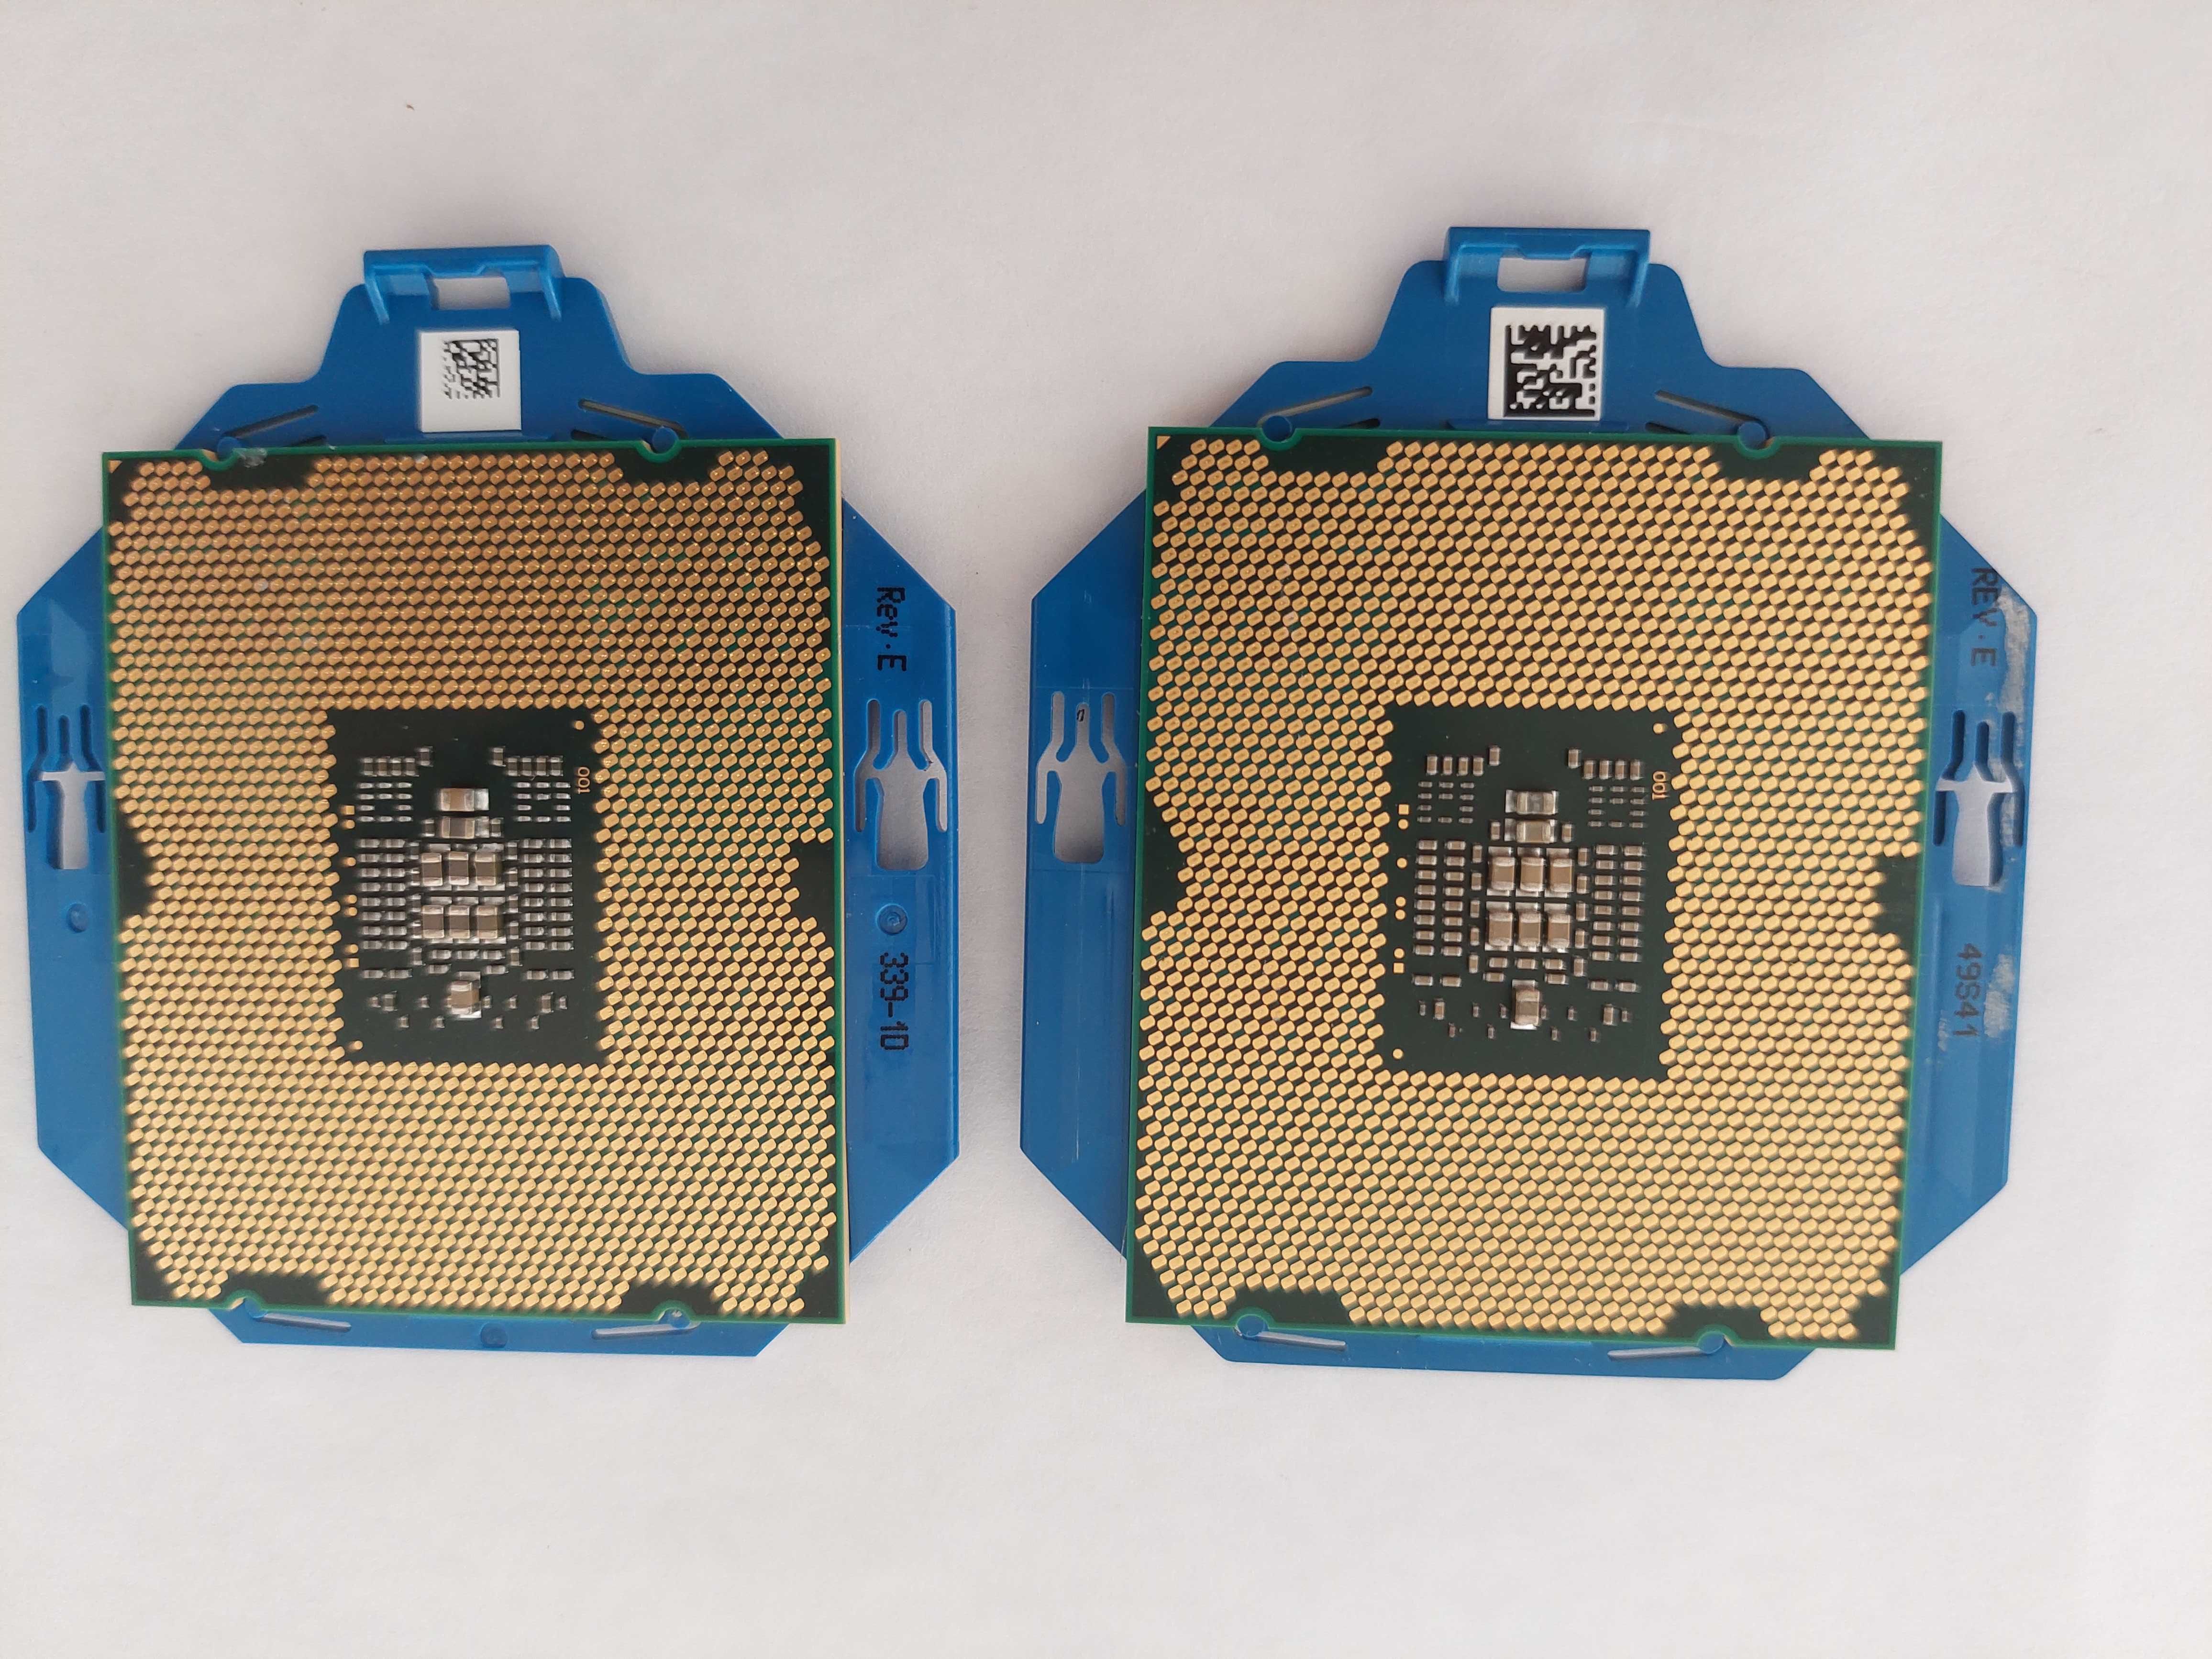 Processor - 2x Intel Xeon Processor 4 core E5-2609 V1 LGA2011